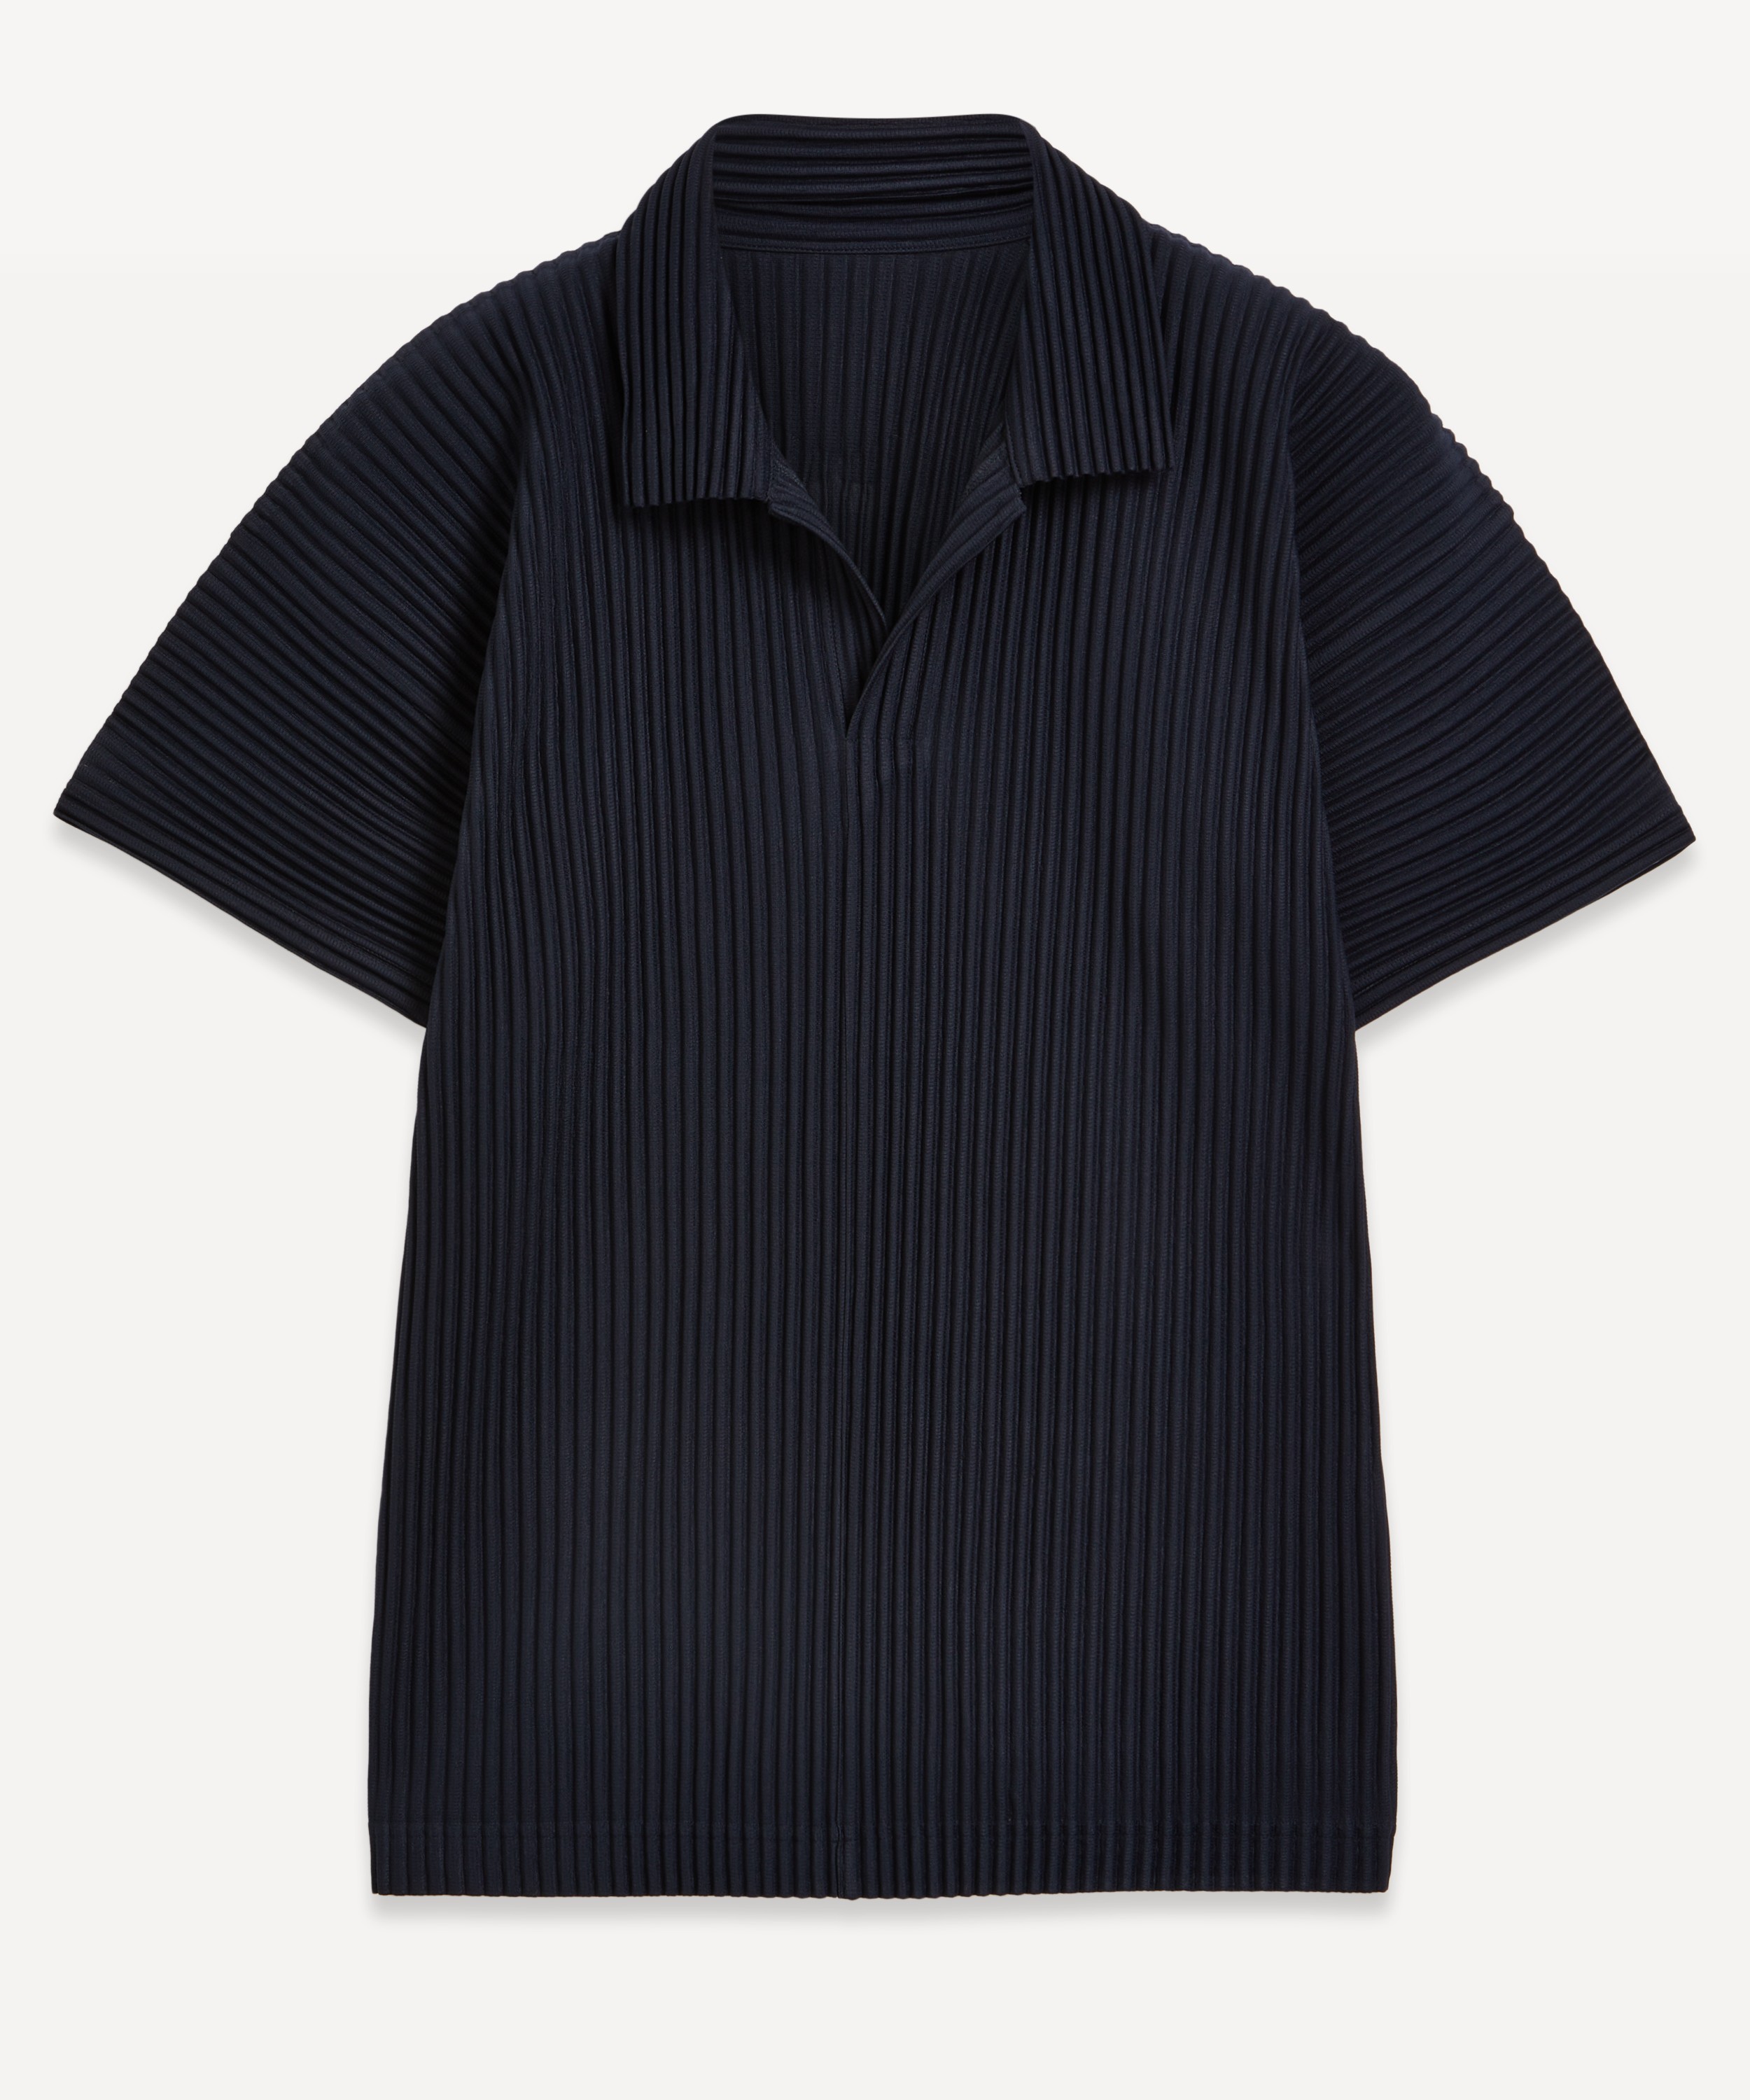 HOMME PLISSÉ ISSEY MIYAKE - Basics Pleated Short Sleeve Shirt image number null